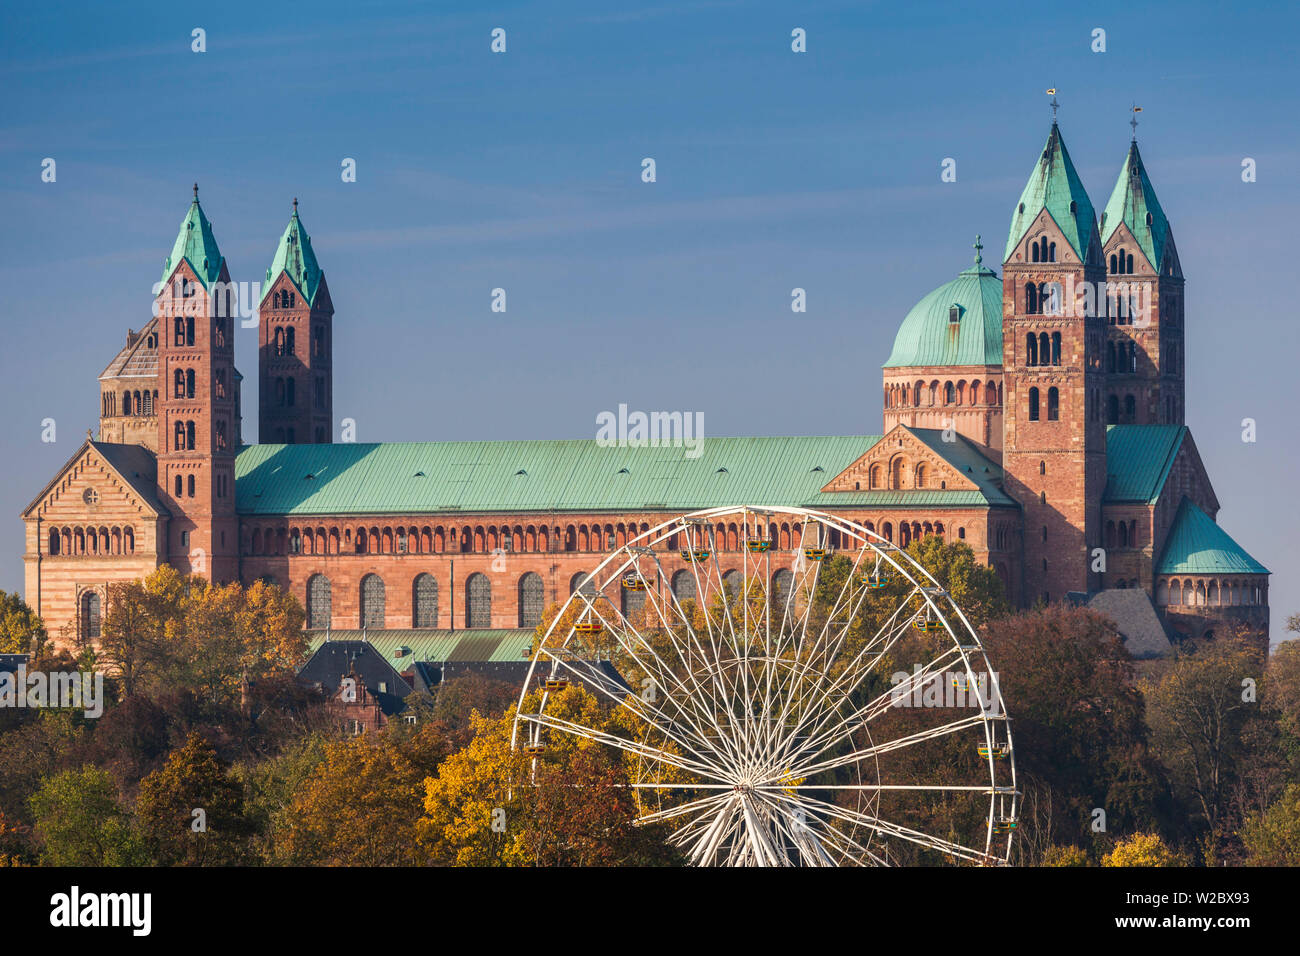 Germany, Rheinland-Pfalz, Speyer, Dom cathedral, elevated view Stock Photo